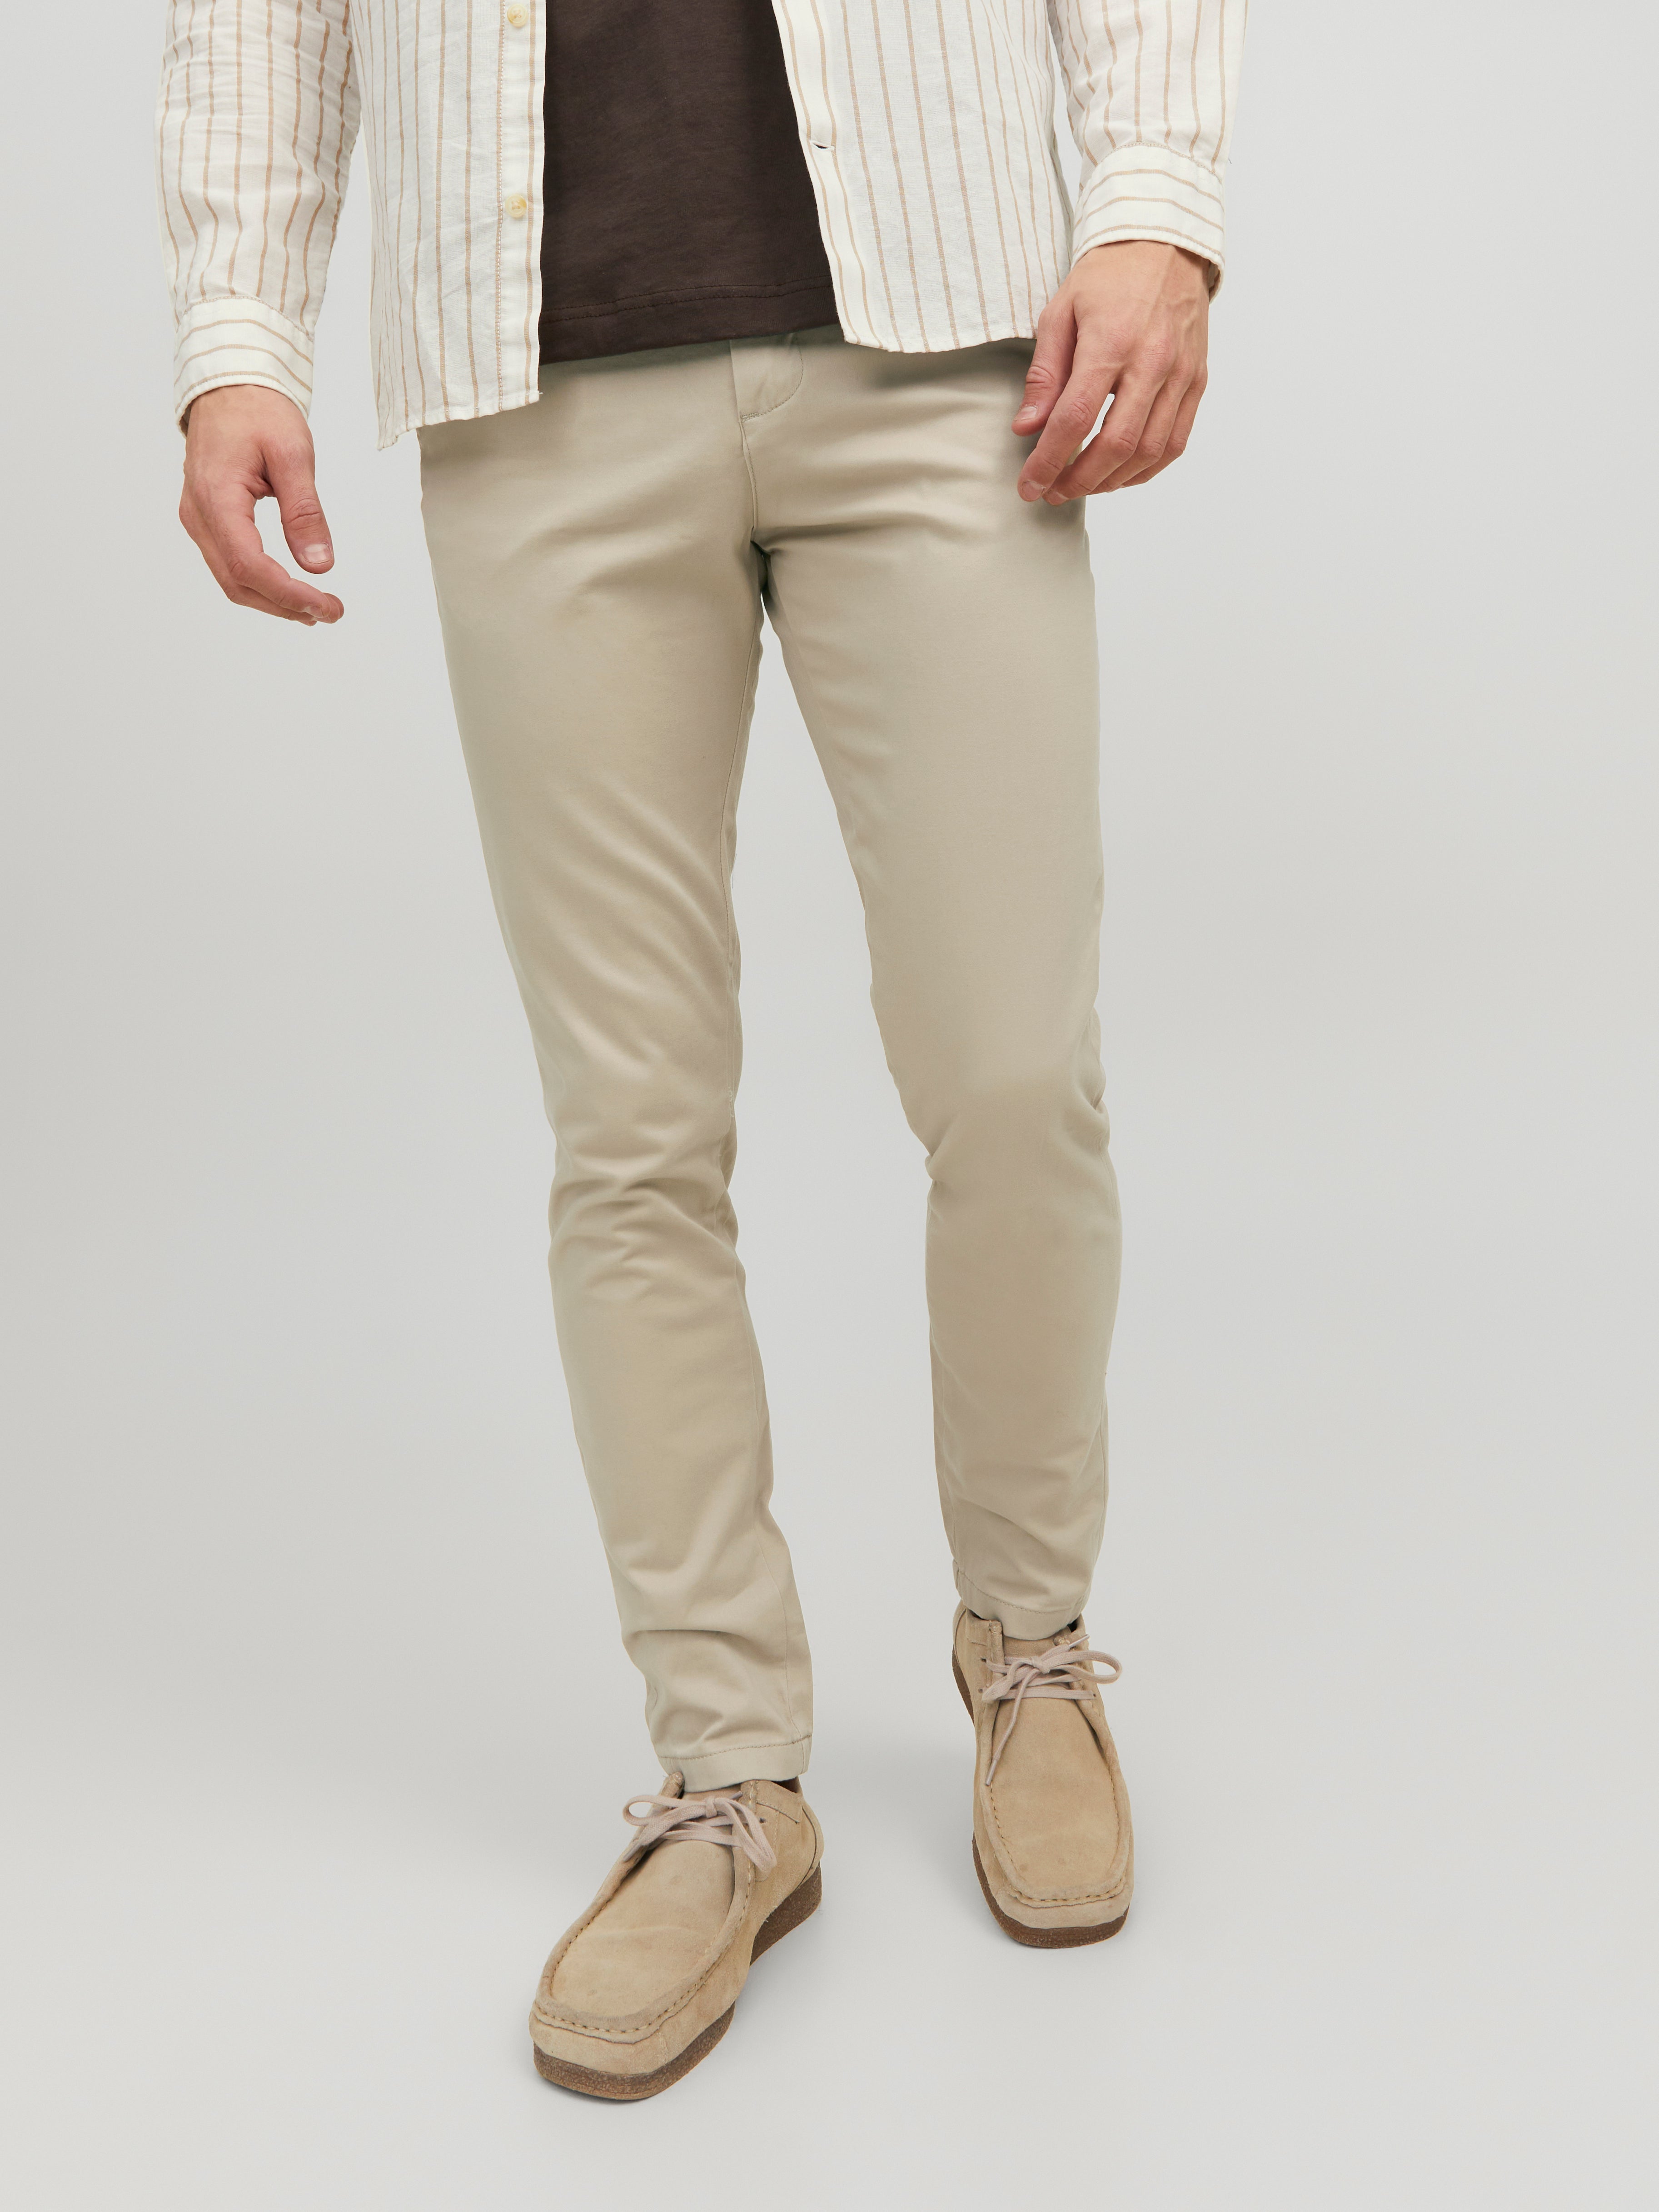 Unique Bargains Men's Slim Fit Trousers Flat Front Solid Color Business  Pants - Walmart.com